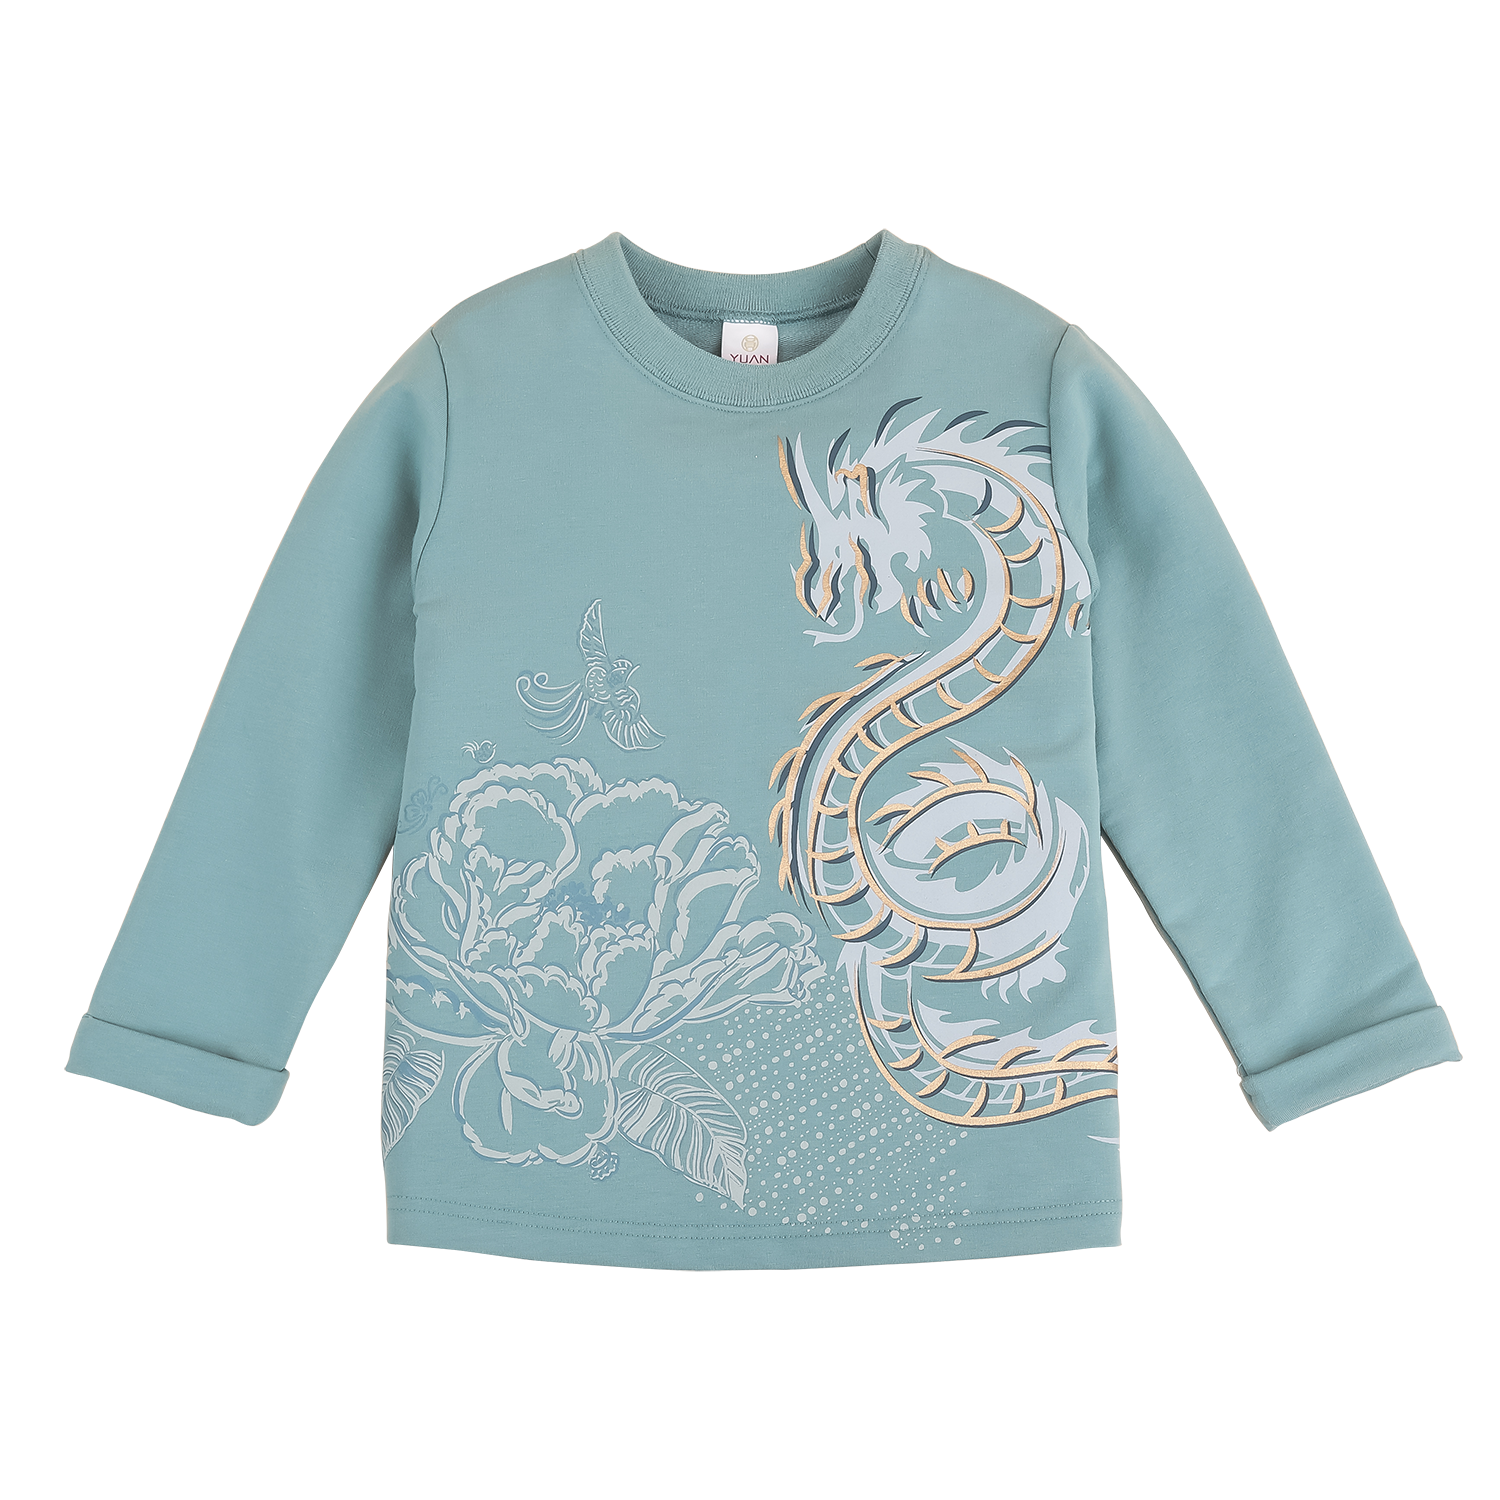 Lake blue kids top with dragon motif